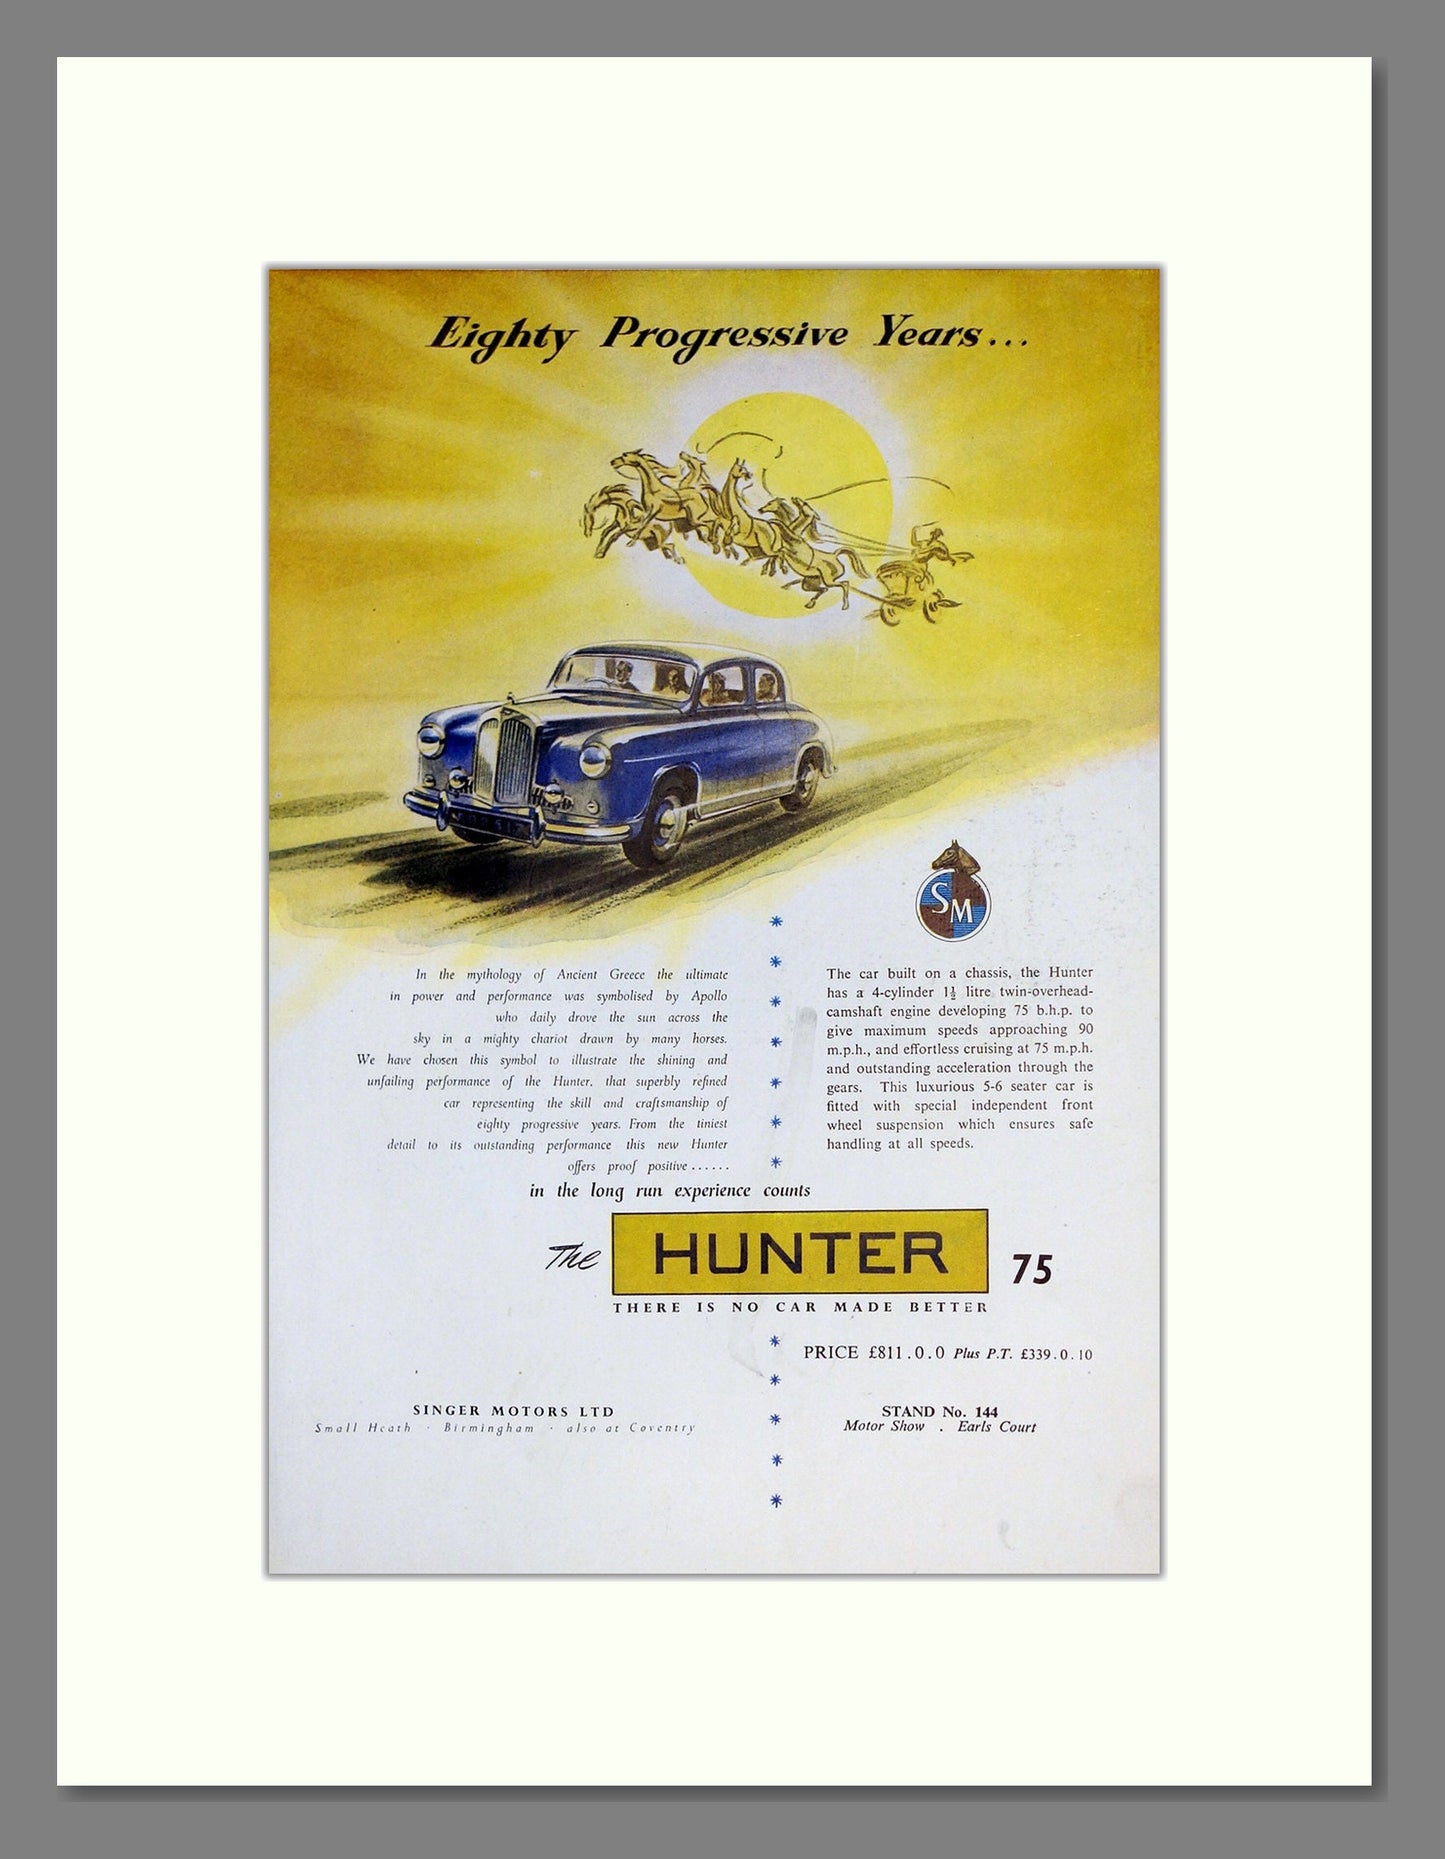 Singer - Hunter. Vintage Advert 1955 (ref AD62010)